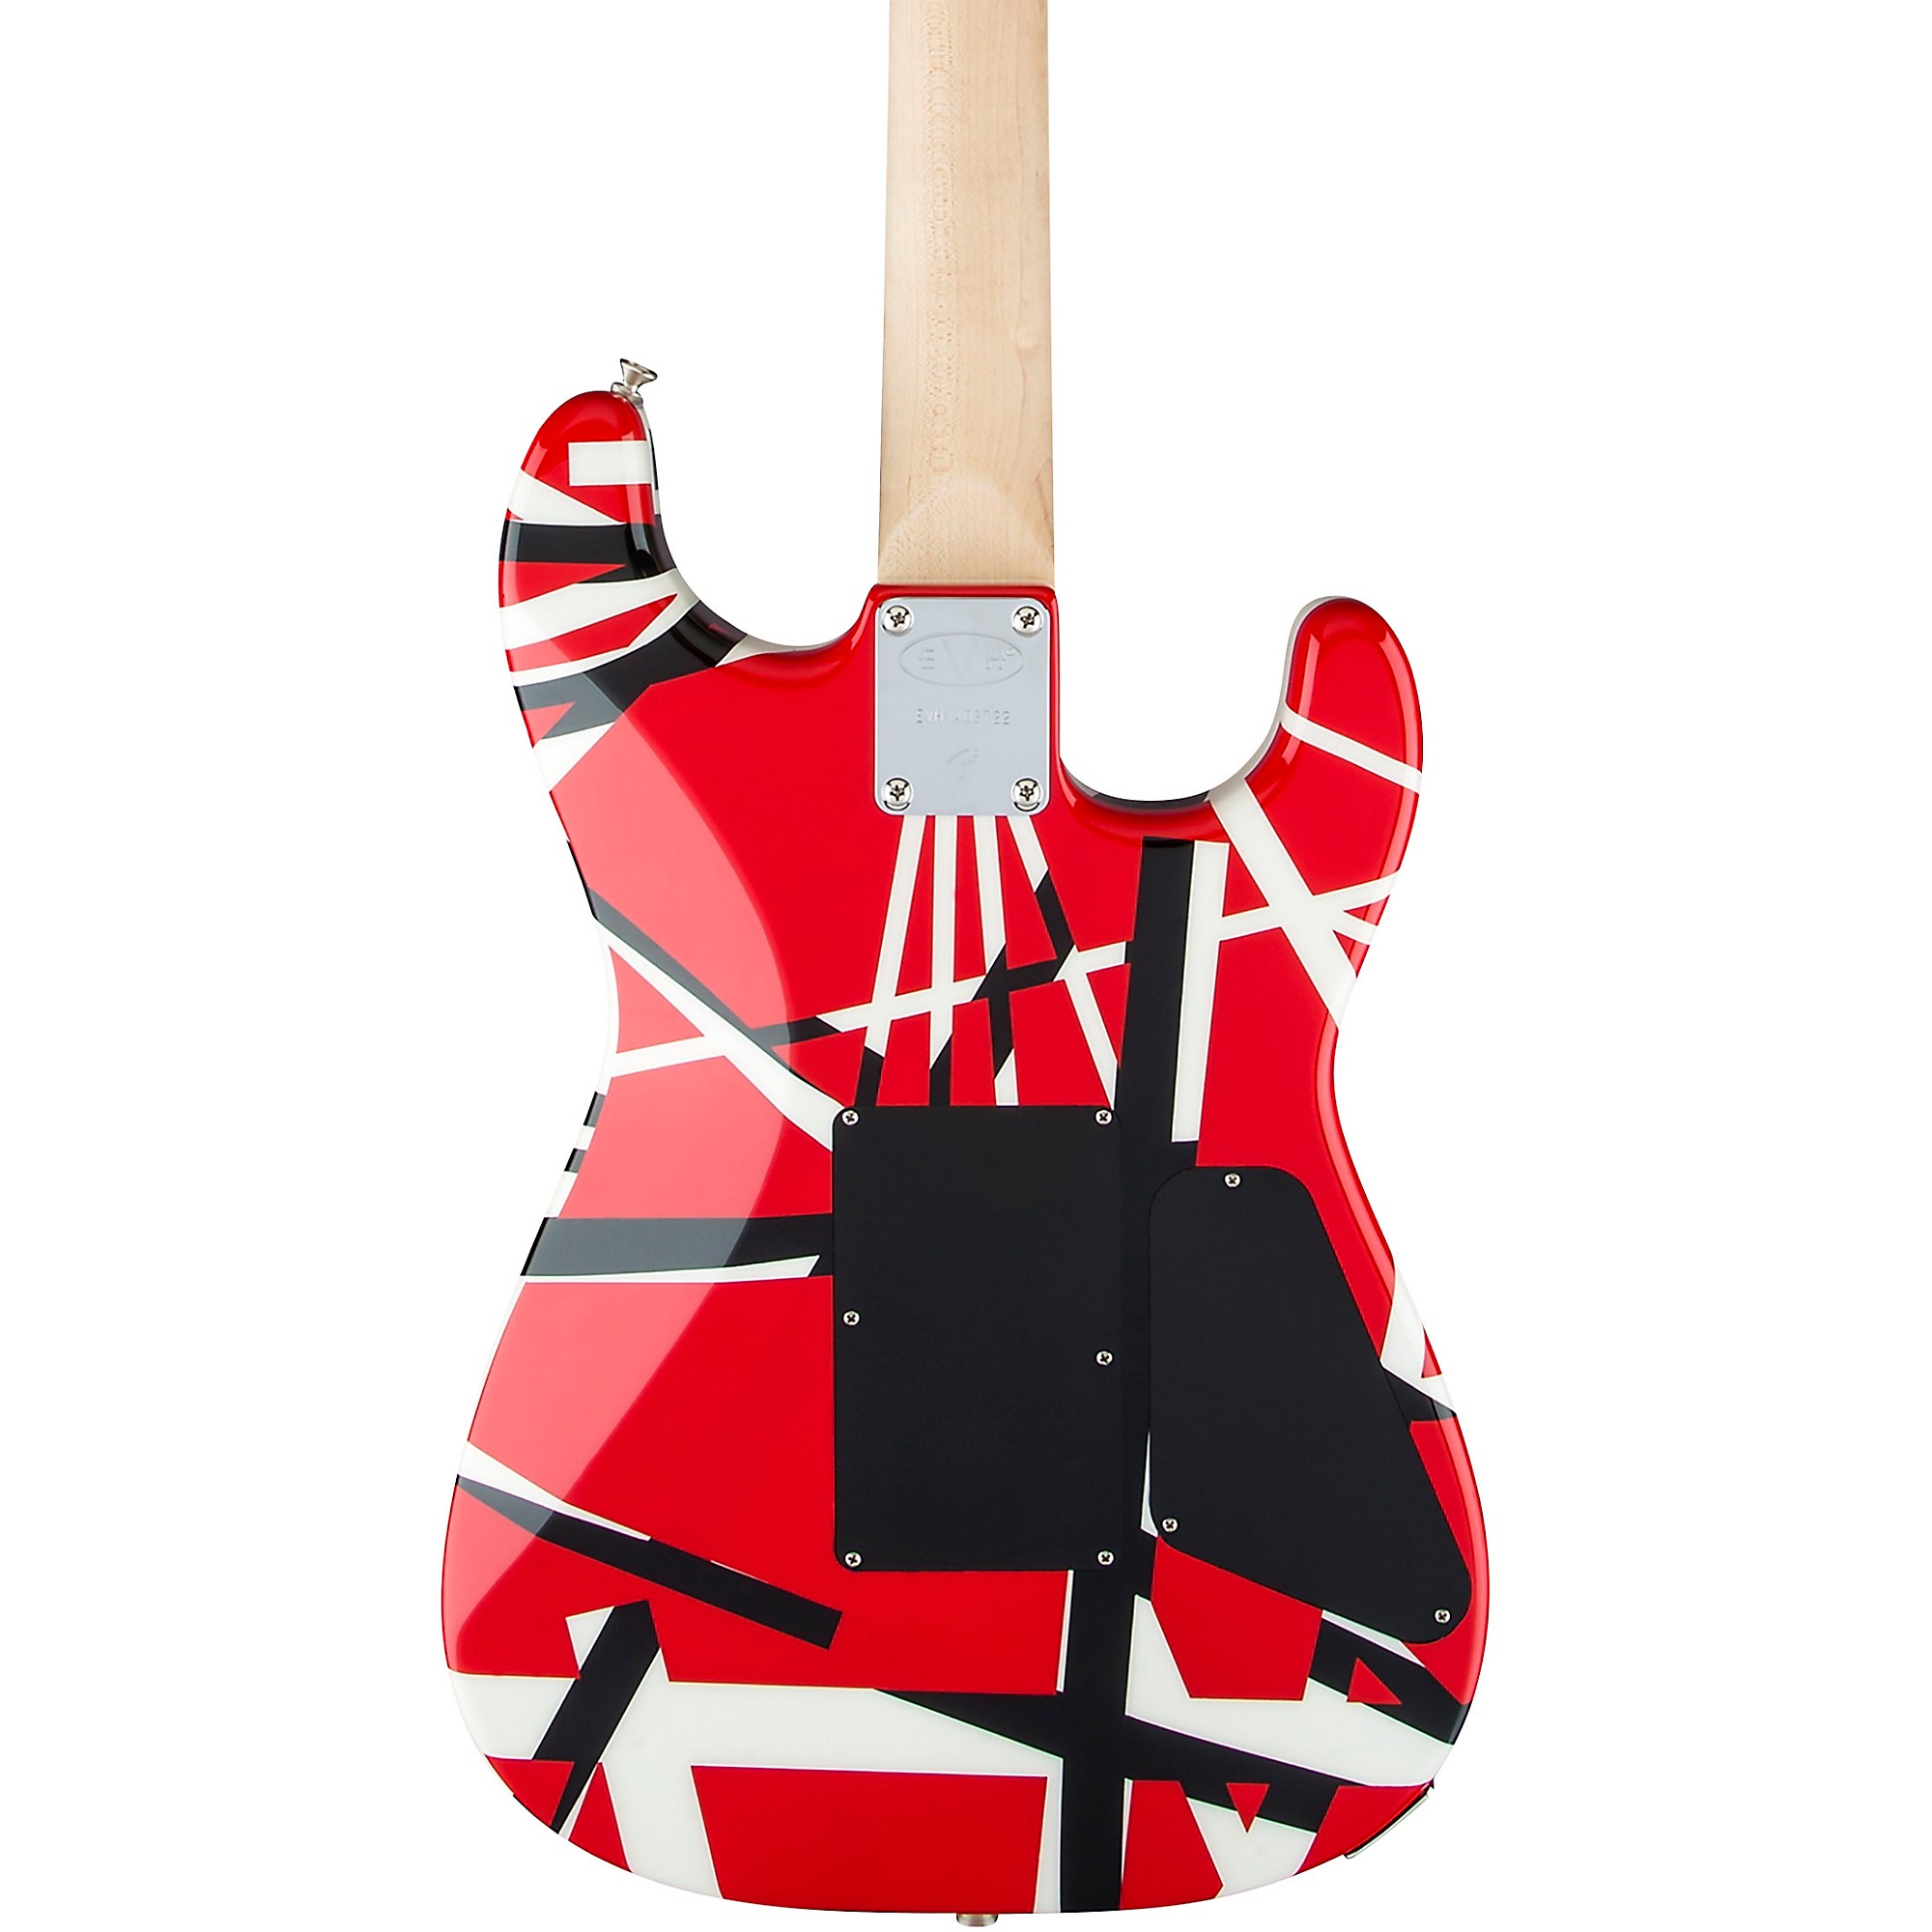 Guitarra Evh Striped Series Rbw Red Black White - Eddie Van Halen Signature  - Crunch Music